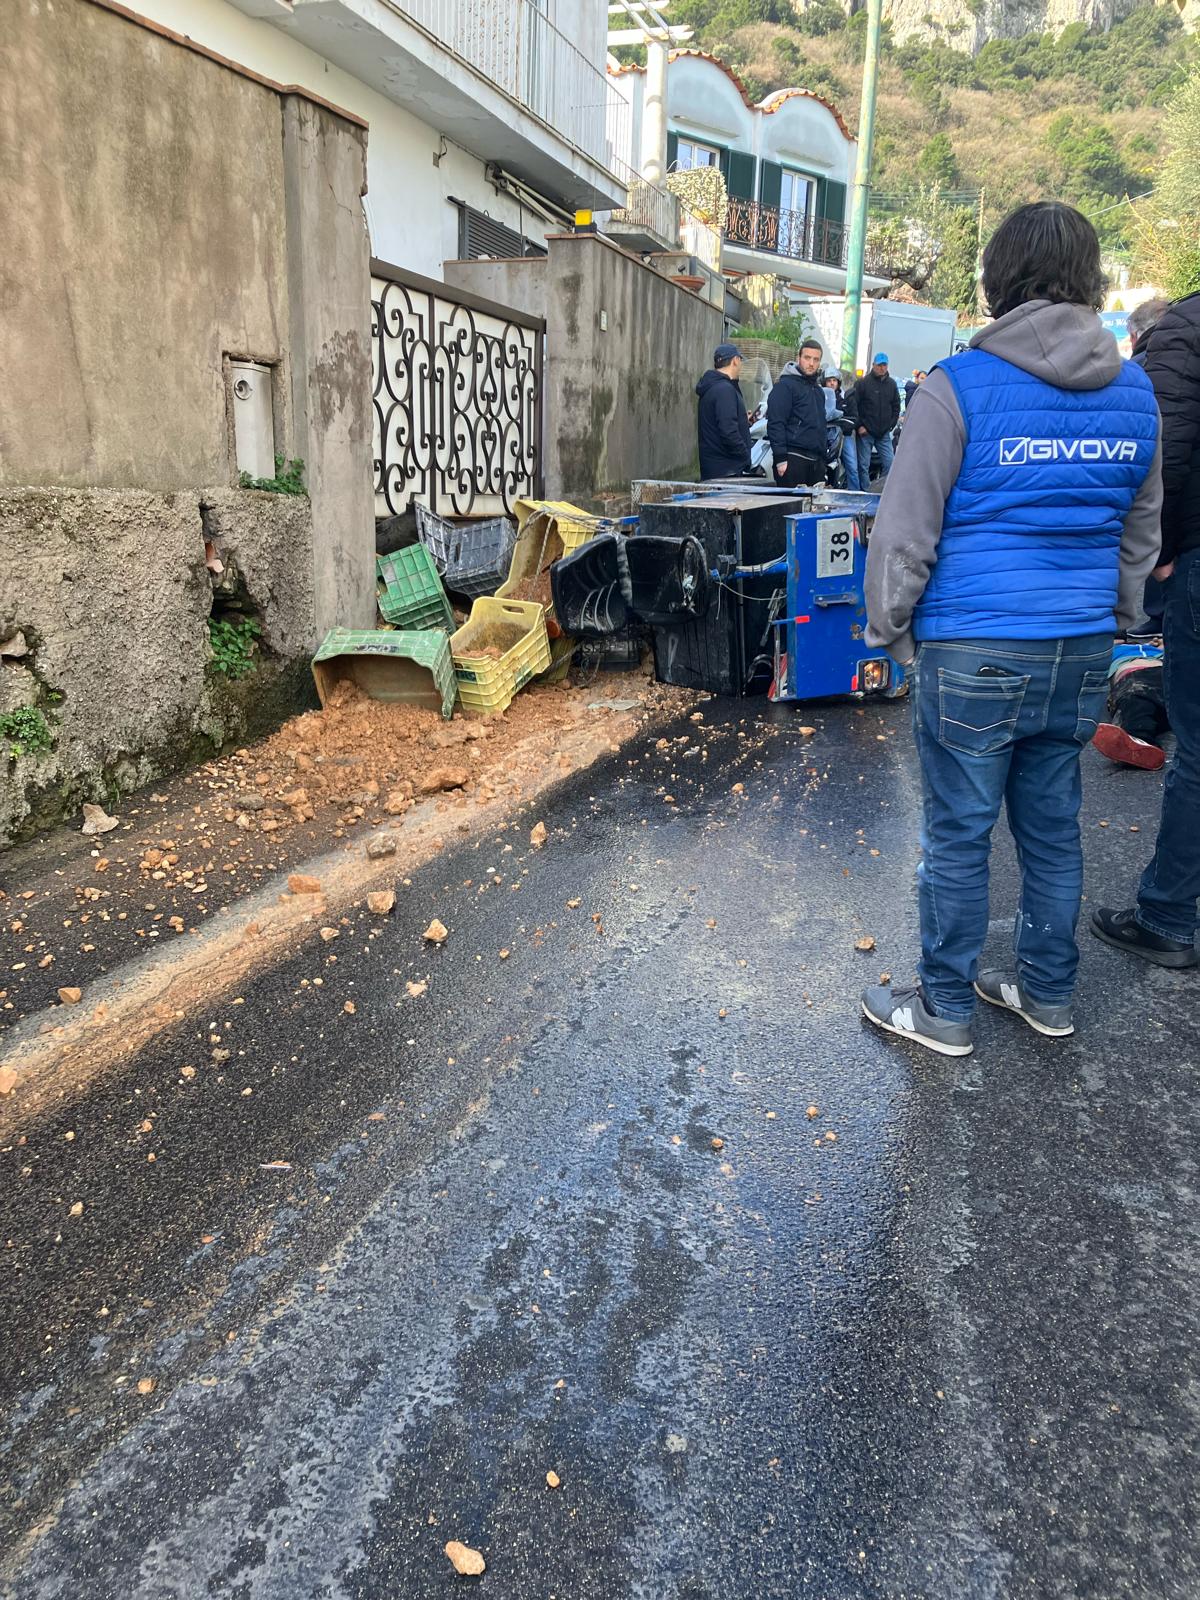 Fuori pericolo il conducente del carrello rimasto ferito nell’incidente stradale a Capri